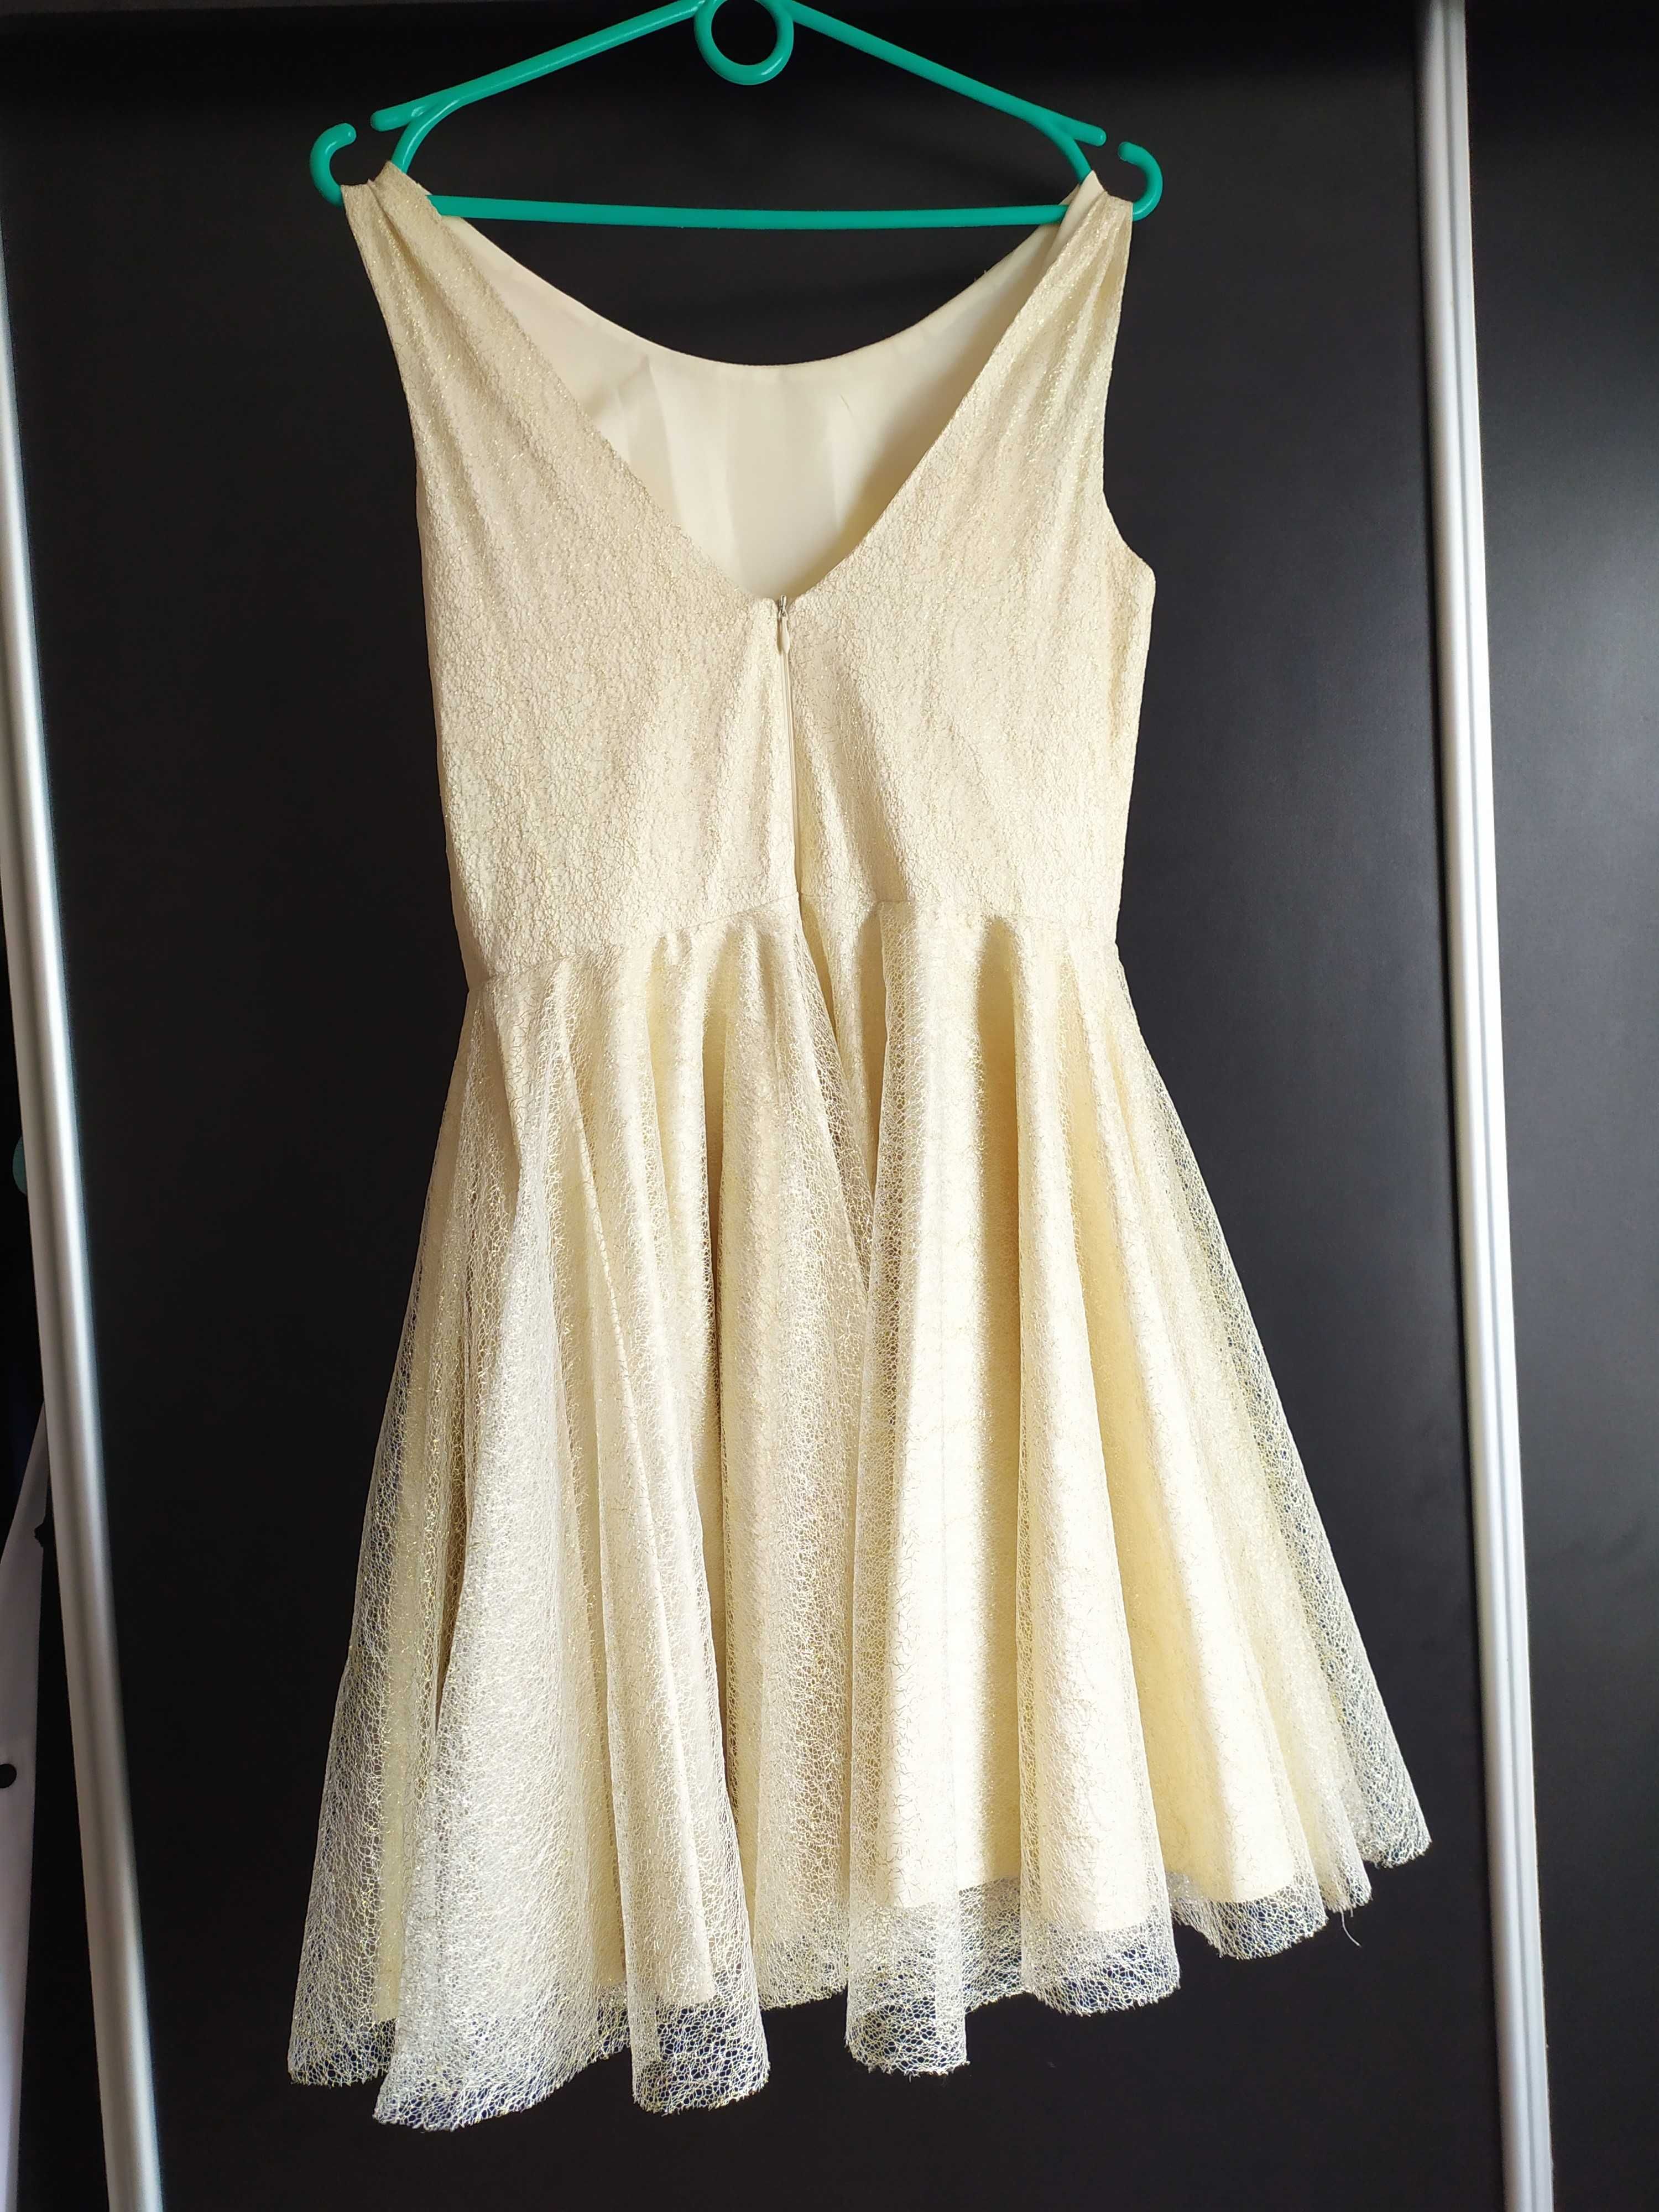 Kremowa złota sukienka na wesele Koton S/M jak nowa